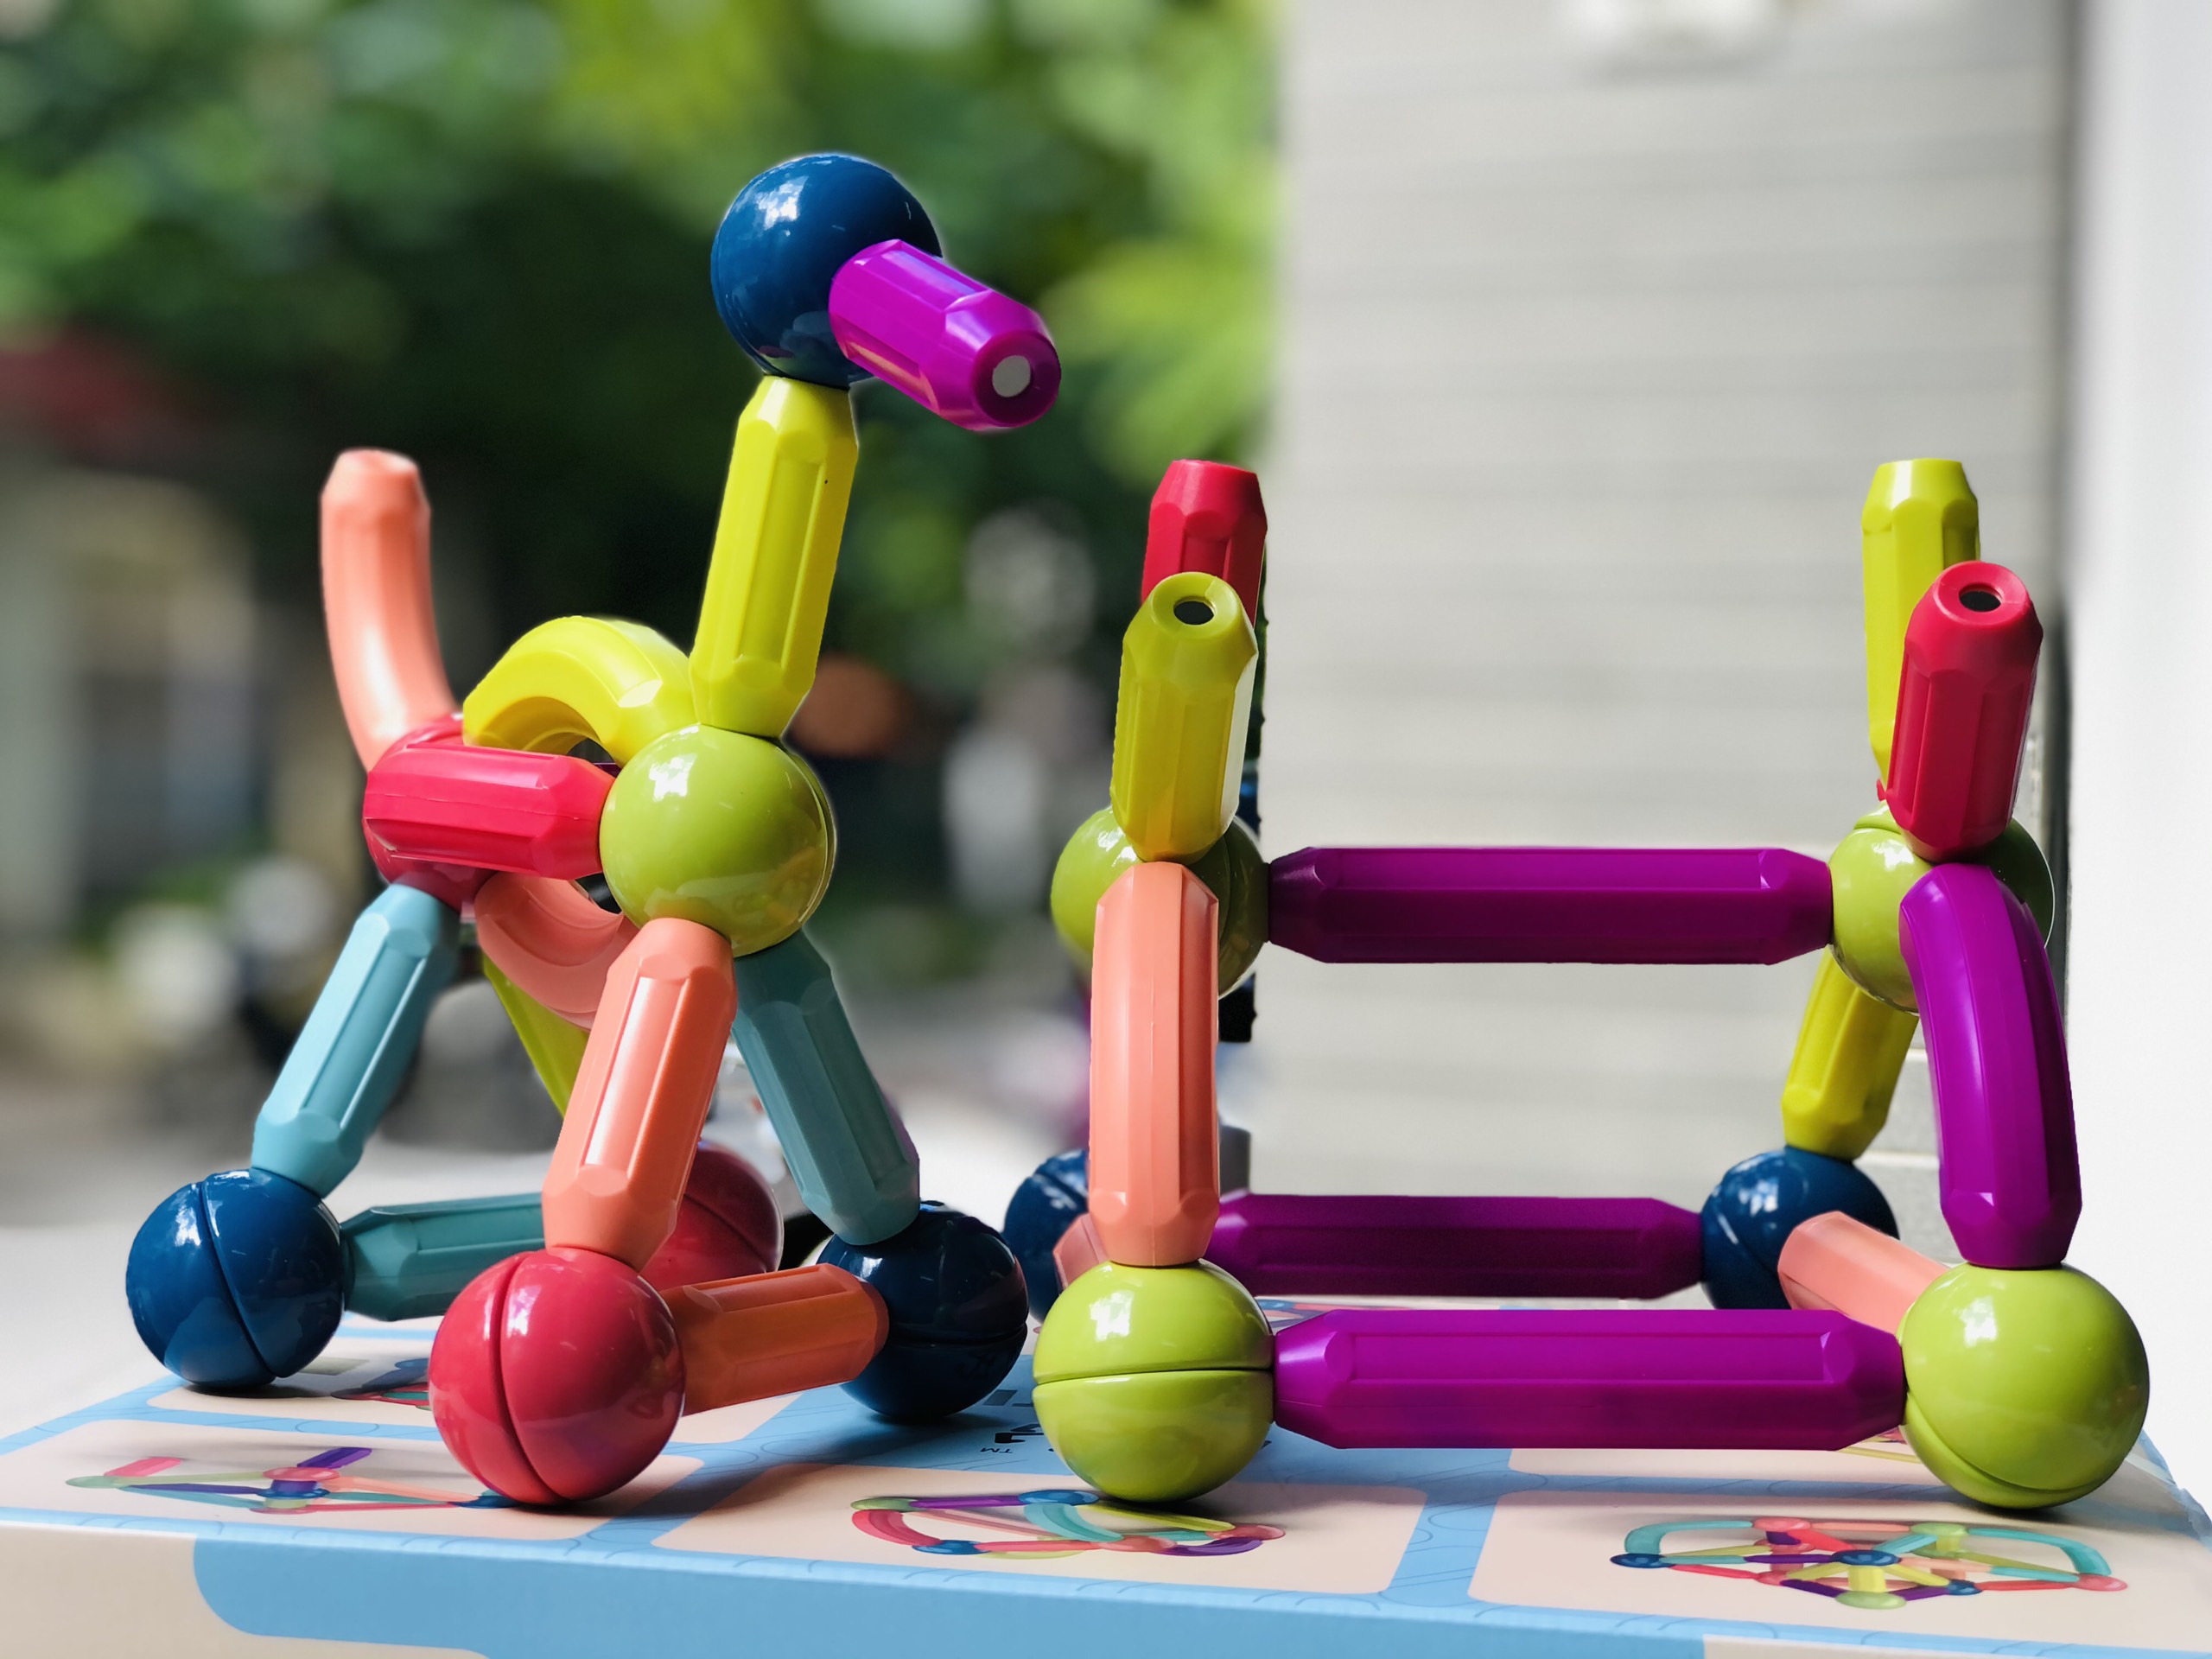 Bộ xếp hình nam châm cho bé 64 chi tiết Magnetic Stick, đồ chơi giáo dục,  phát triển tư duy, trí thông minh cho bé